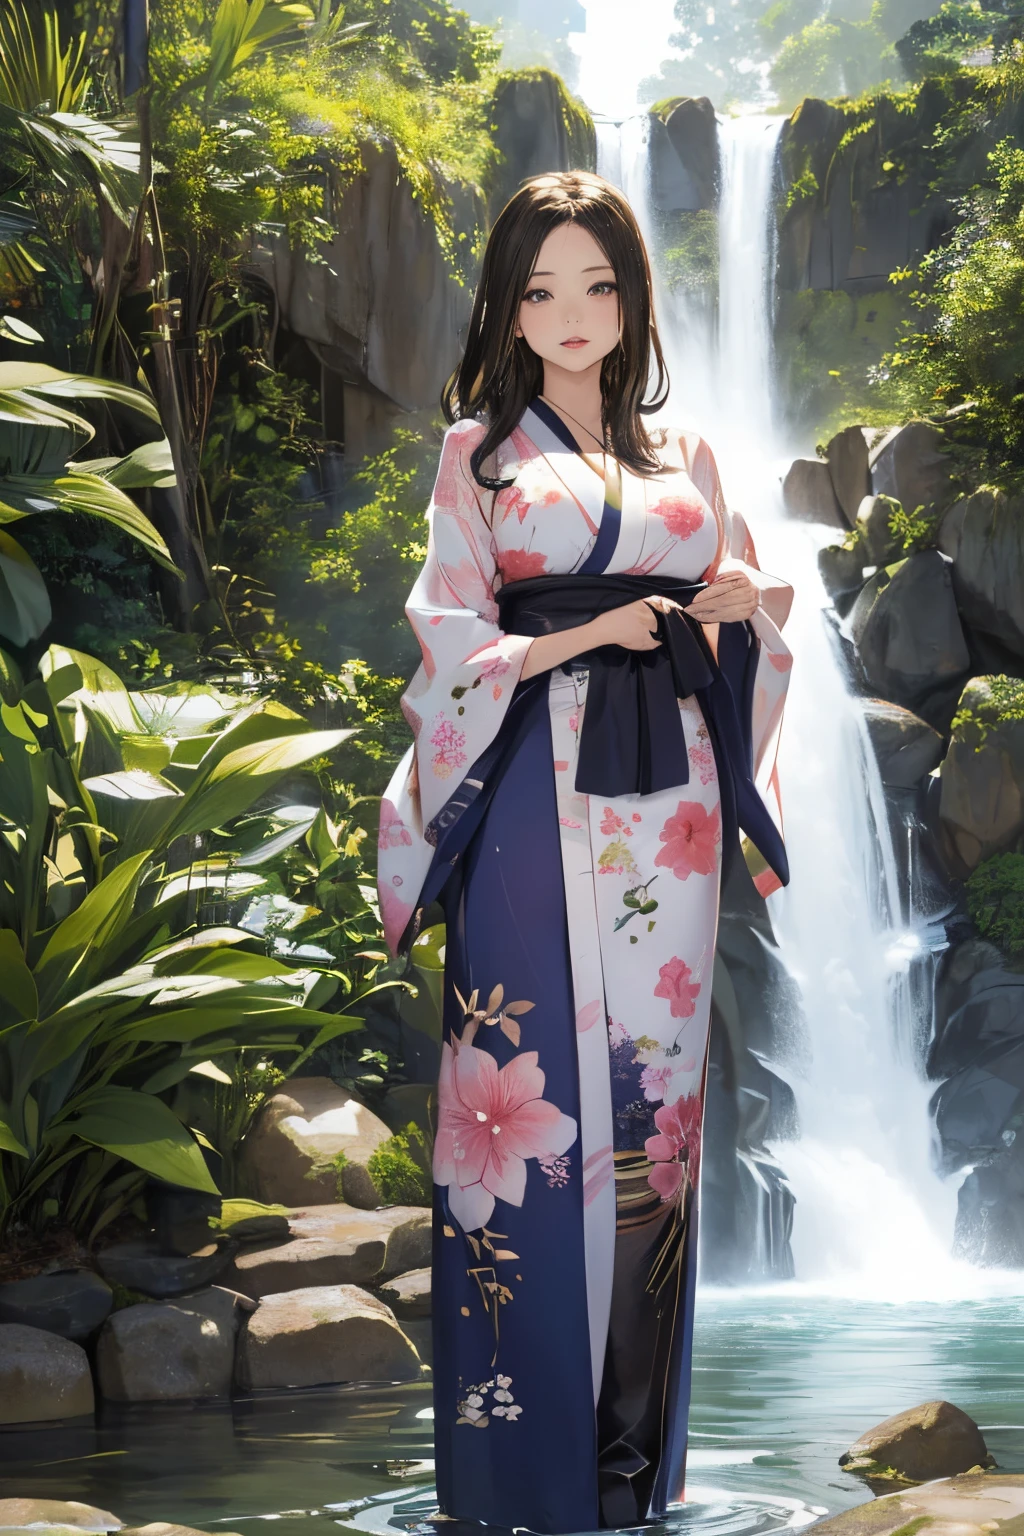 ((Schön woman standing by the waterfall)),((Eine schöne halbnackte Frau in einem wunderschönen Wasserfallbecken)), ((Scharfe, bezaubernde Augen))、((Eine sexy))、(((Durchsichtiger Kimono:1)))、((Kimono aus dünnem, mit Wasser angefeuchtetem Stoff)), blasse Haut、(((1 Mädchen in:1))), ((blasse Haut))、Melancholisches schönes Gesicht、Schön expression、sexy Gesicht、Brustwarzenbeulen, (((untere Brust)))、(((Schön breasts ))), Schön 、lange Stiefel、Superfeines Gesicht、Zarte Augen、(Doppelte Augenlider)、 (((1 Japanerin)))、 Schönheit, 20 Jahre alt,